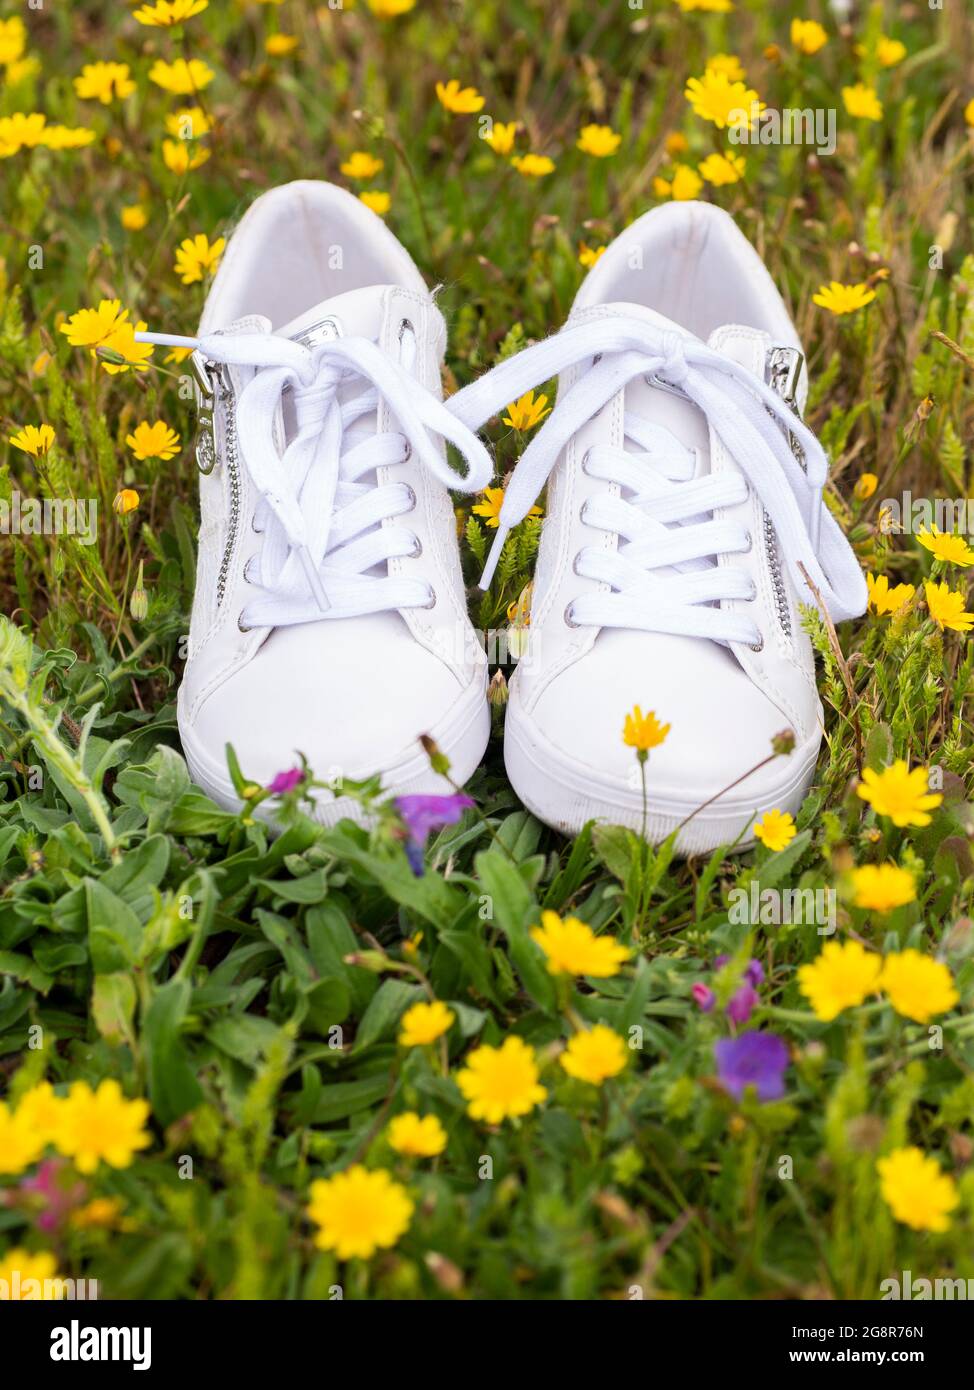 Saubere weiße Damenschuhe Sneaker auf einer Wiese mit Blumen  Stockfotografie - Alamy